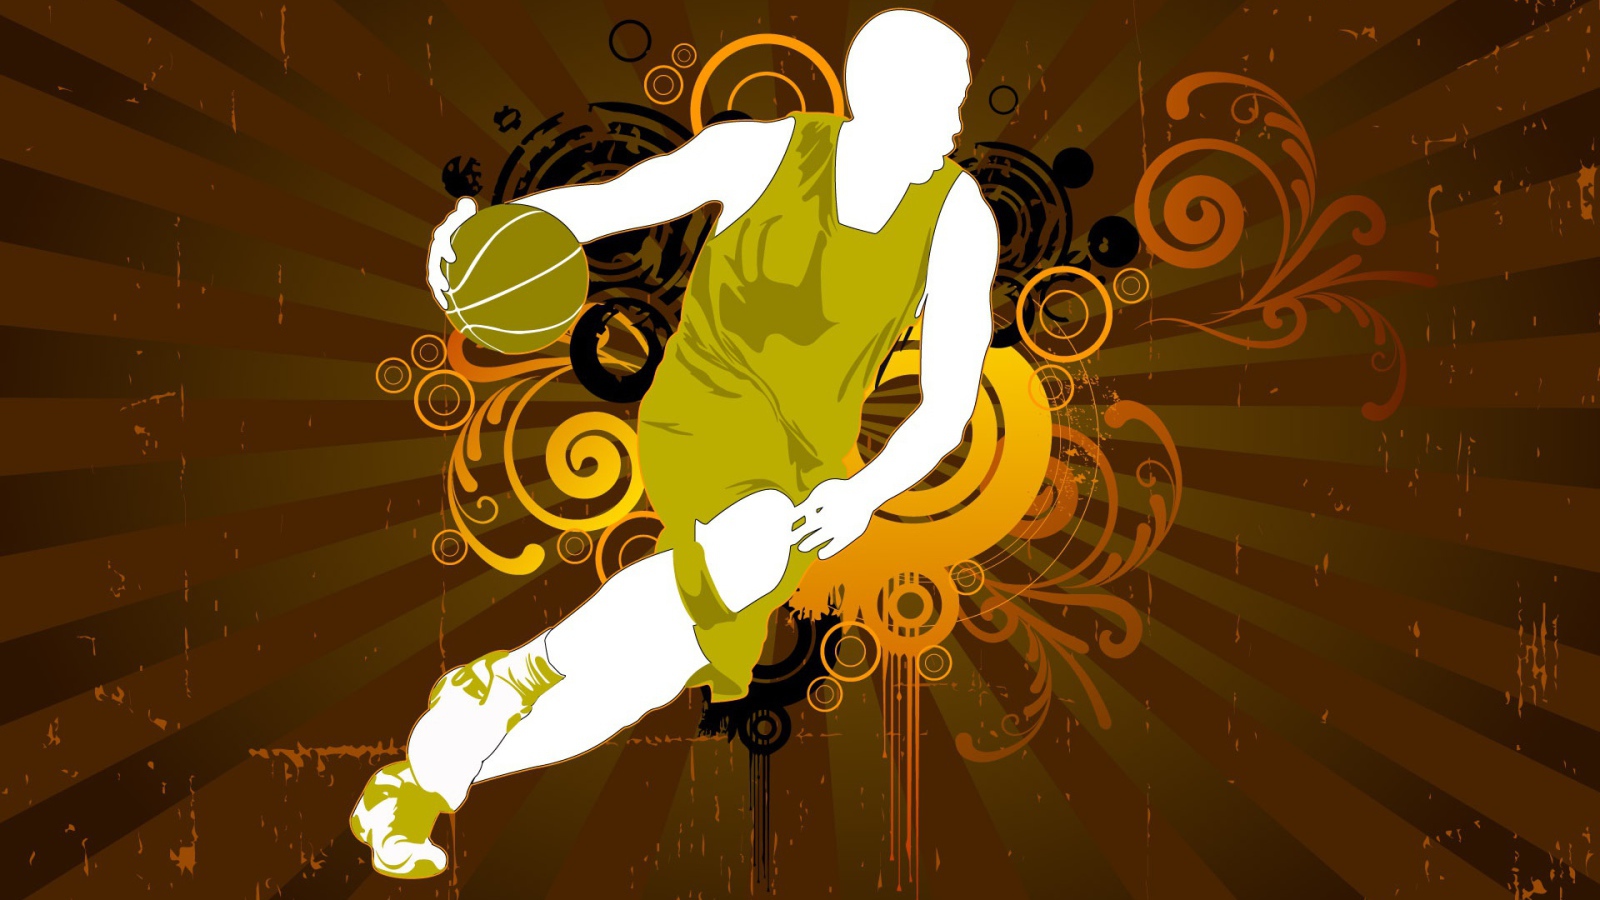 Basketball vector